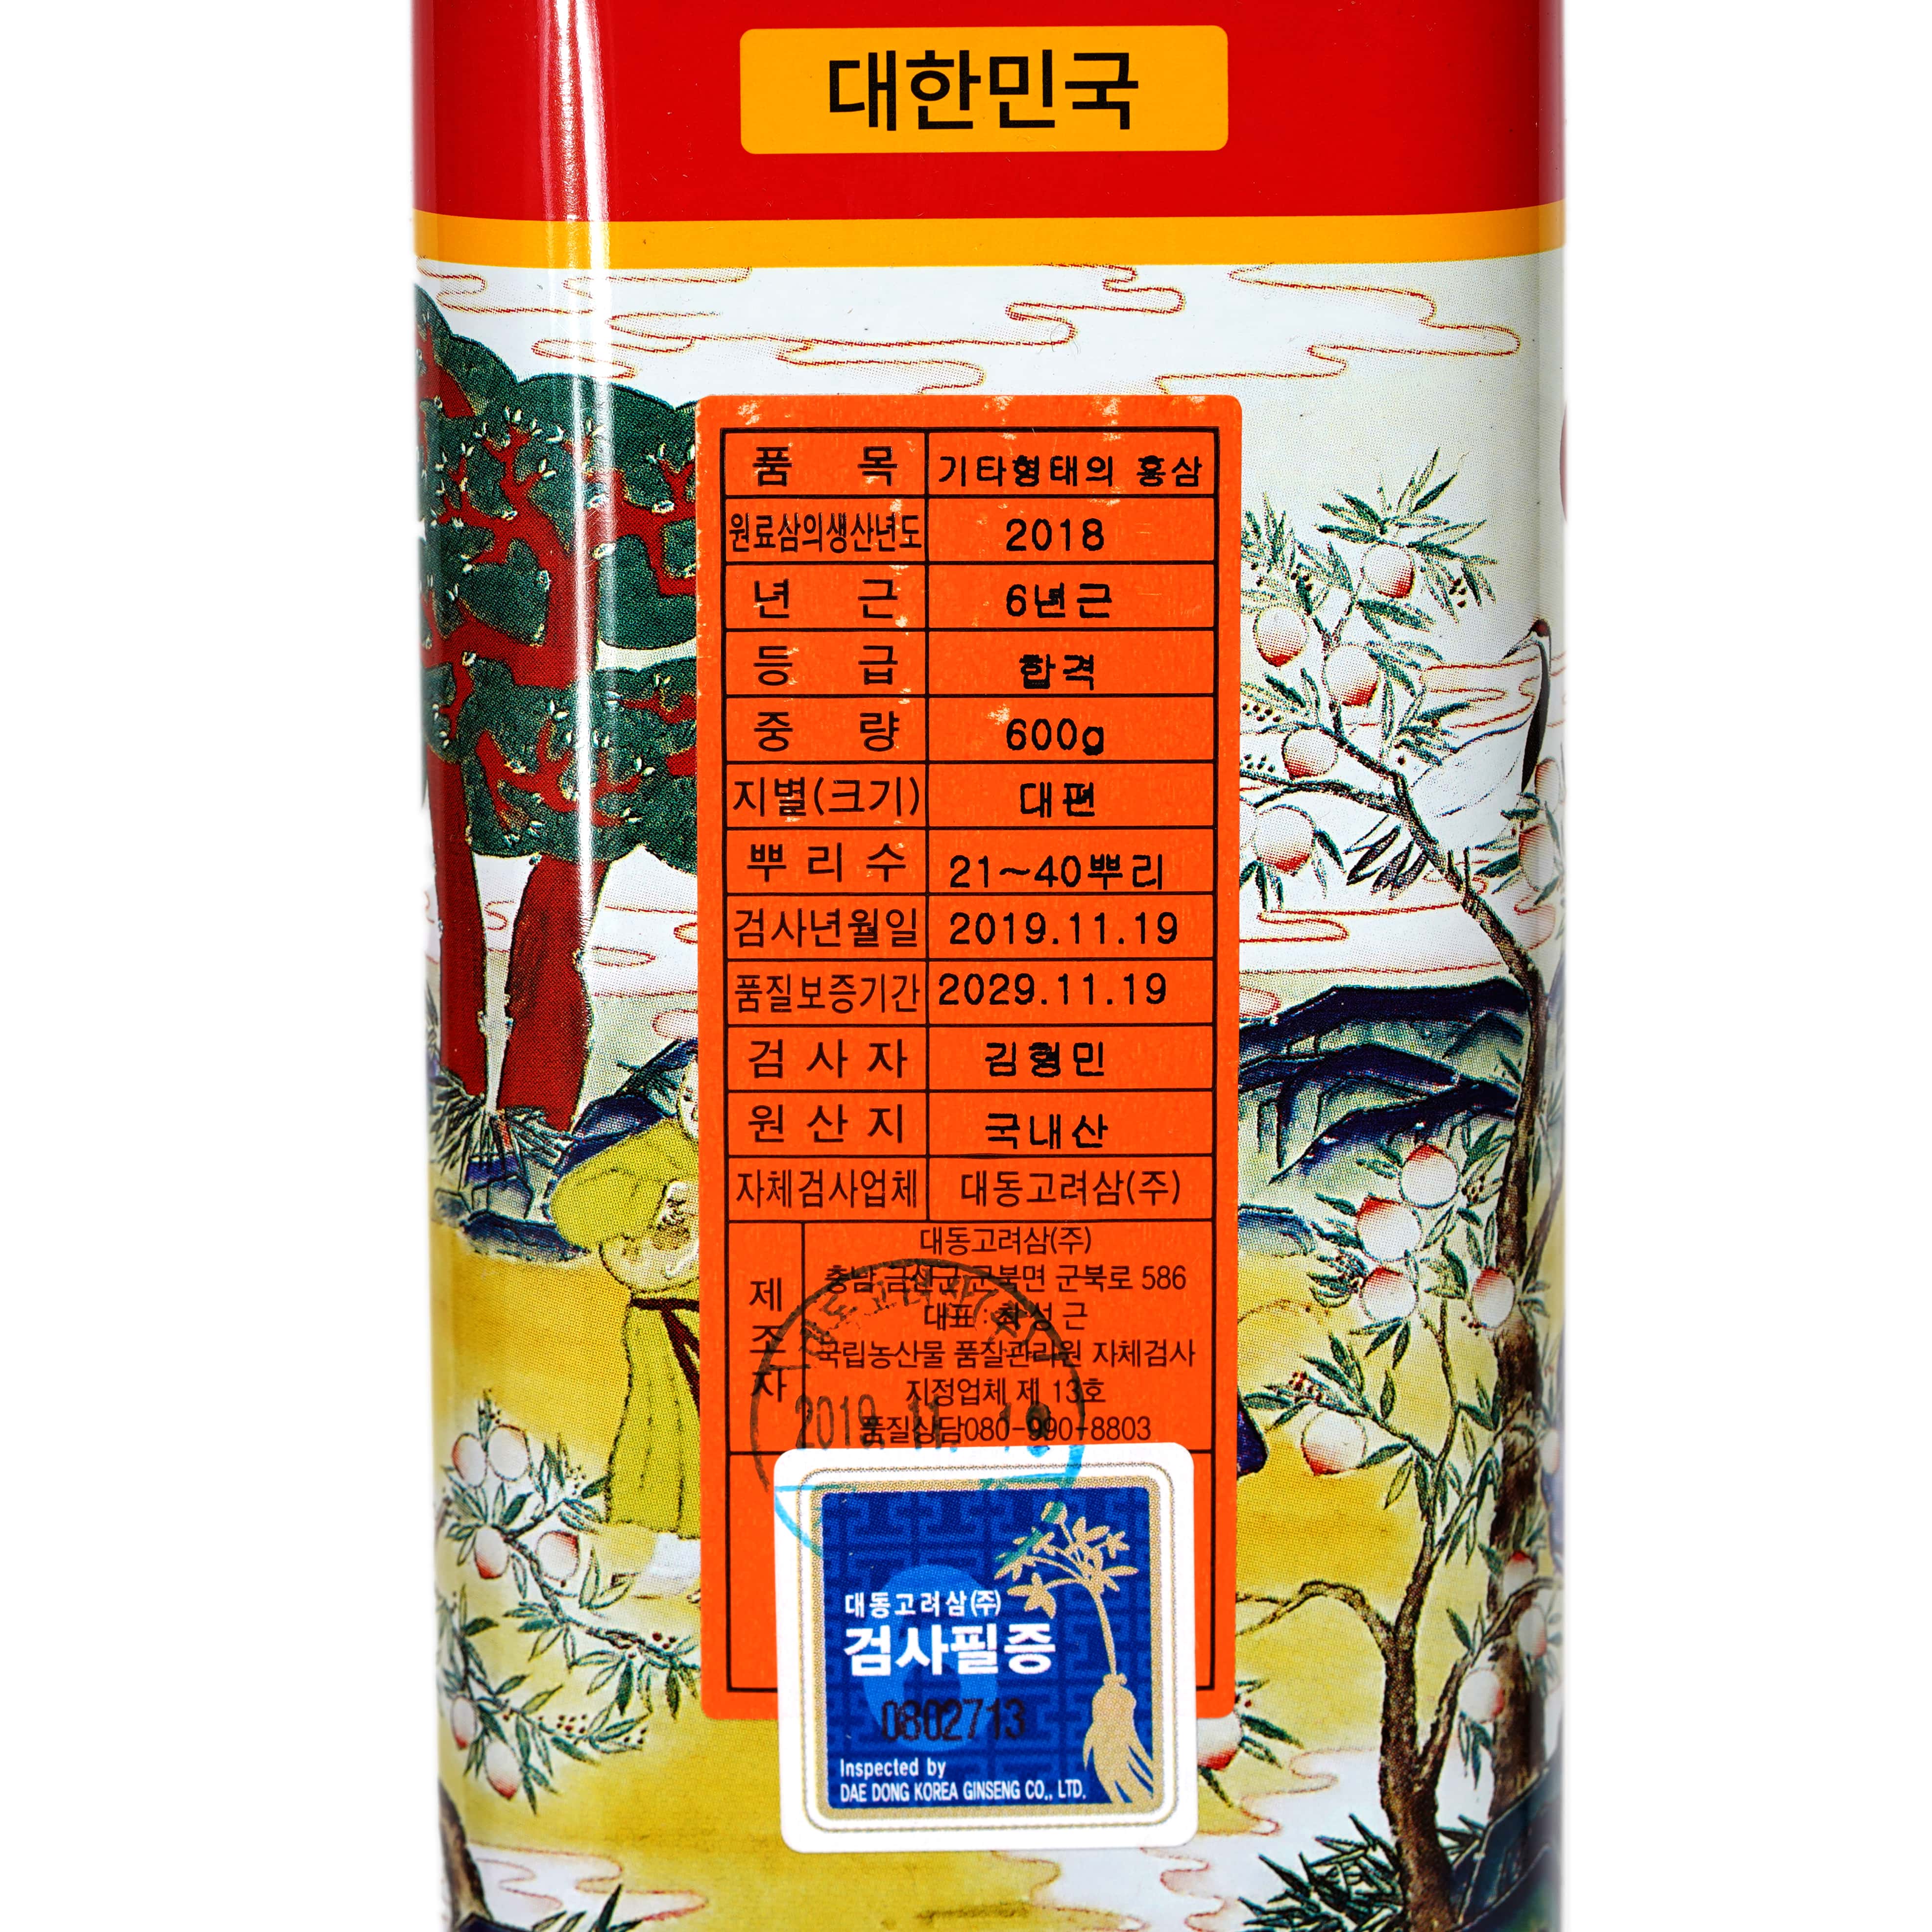 Hồng sâm củ khô Hàn Quốc Daedong Korea Ginseng 600g dòng Premium (21 -40 củ) - Tăng cường trí nhớ, hỗ trợ giảm mỡ máu, phòng ngừa tiểu đường, huyết áp